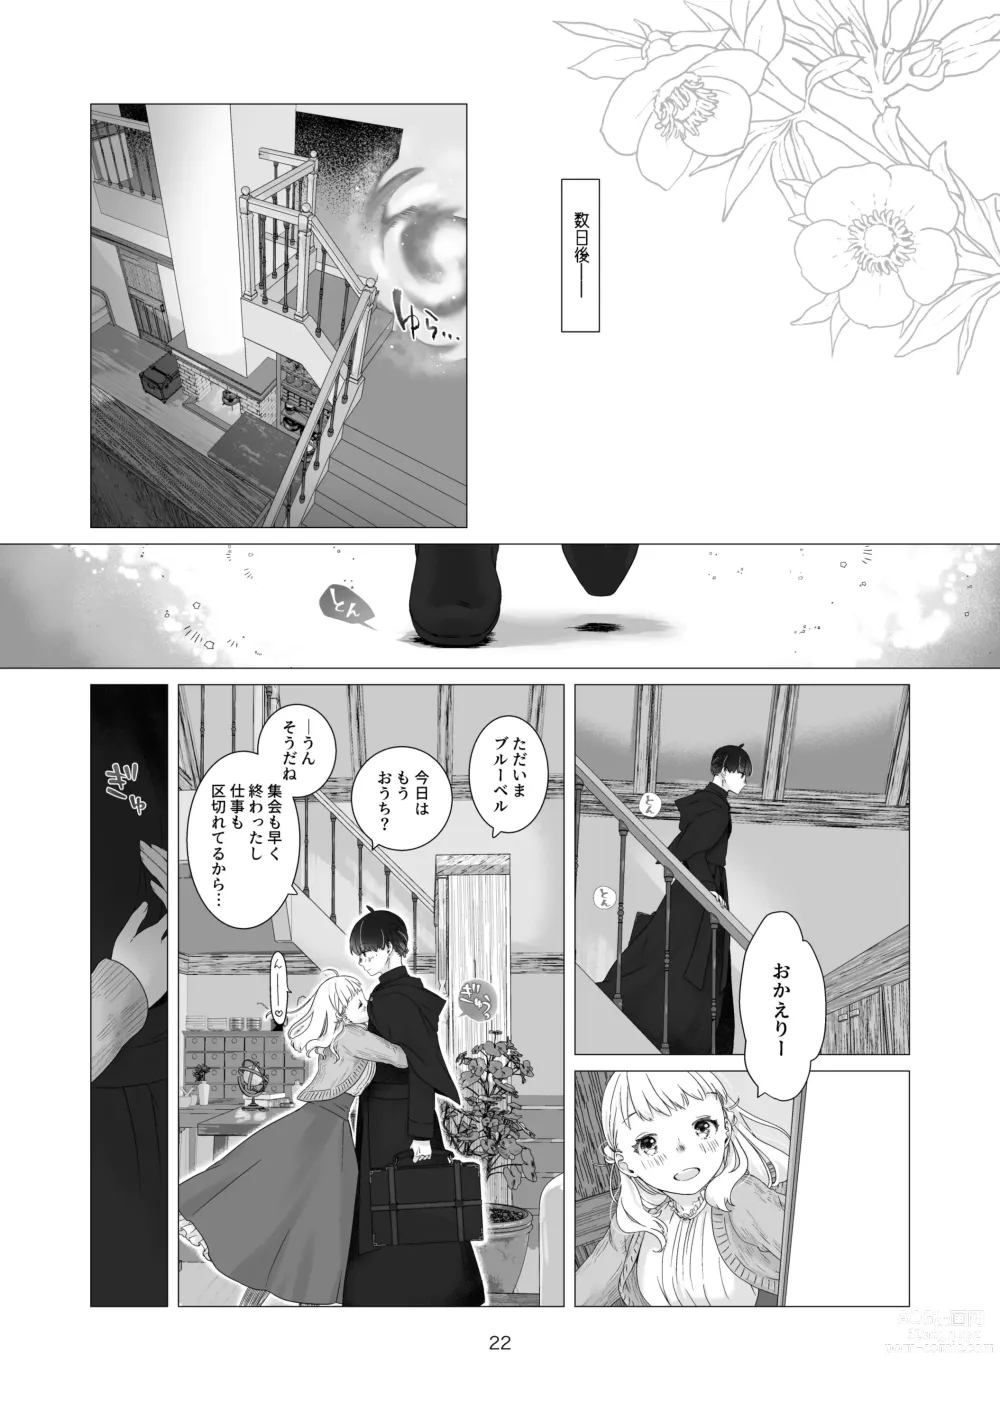 Page 22 of doujinshi Minarai Mahoutsukai-kun no Tsuki no Yoru - The Apprentice Wizard is on the moonlit night.